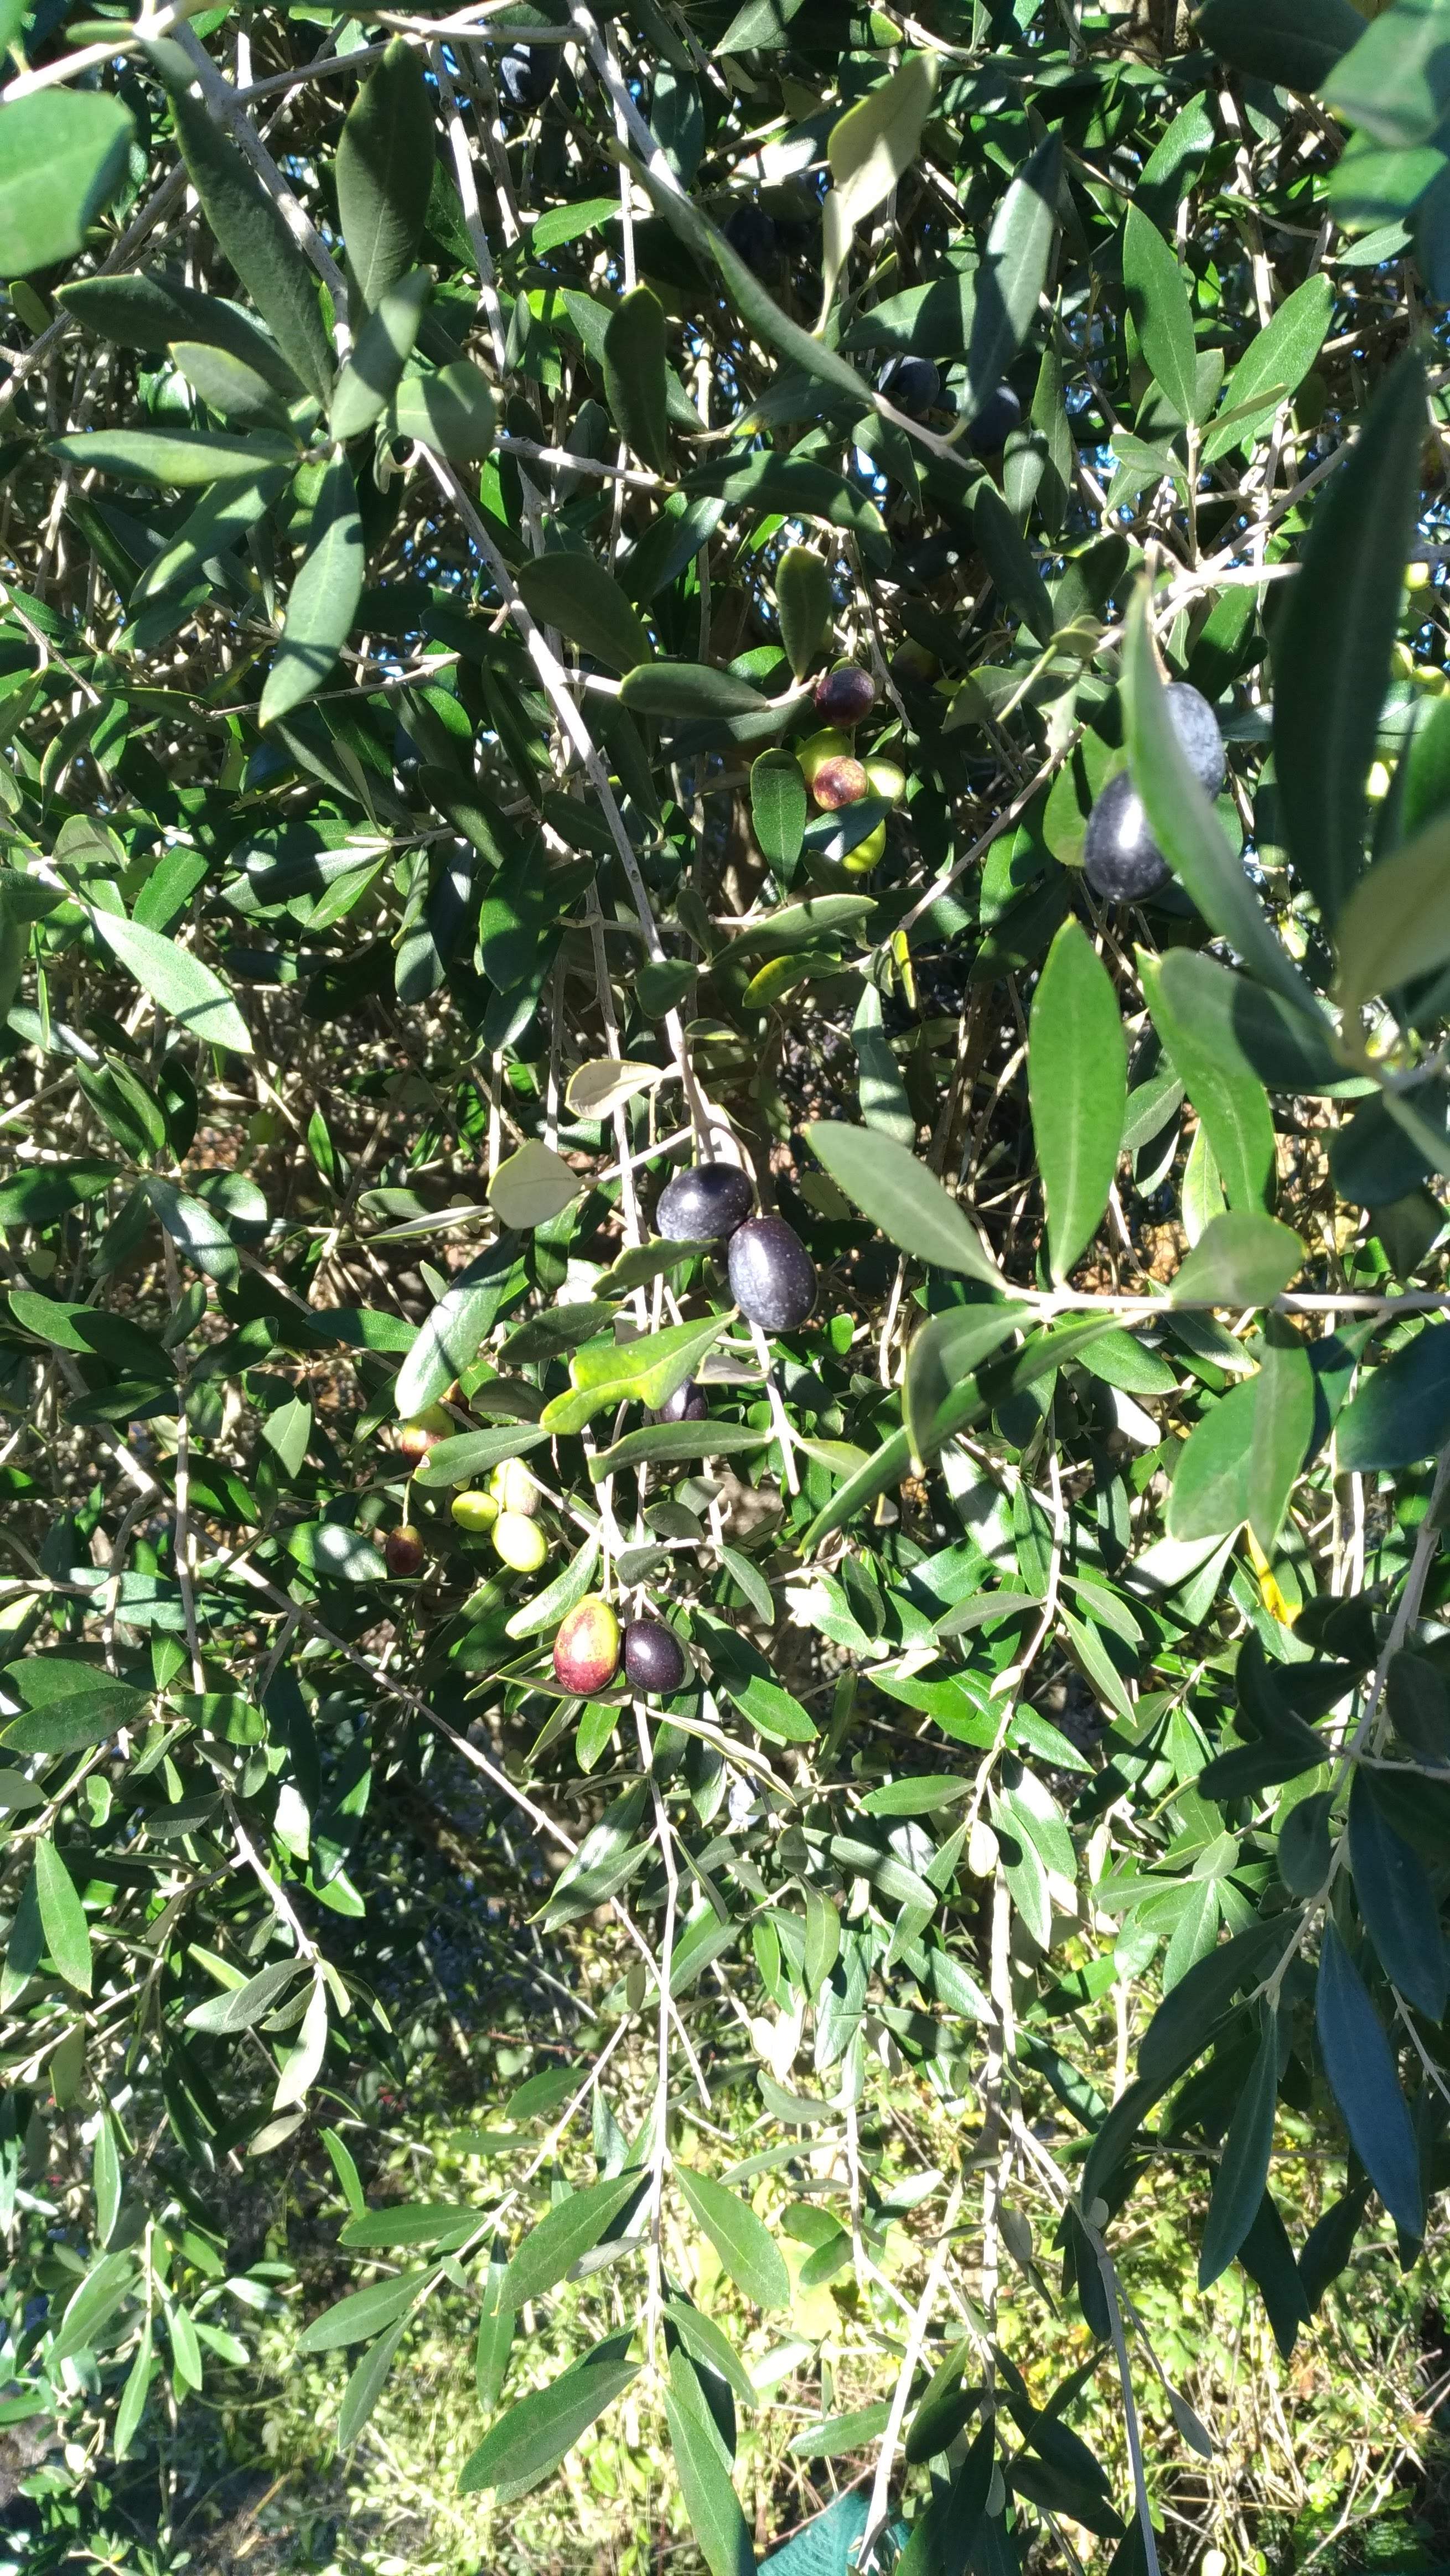 La raccolta delle olive – La fatica che raduna le famiglie / The olive harvest - The effort that unites families